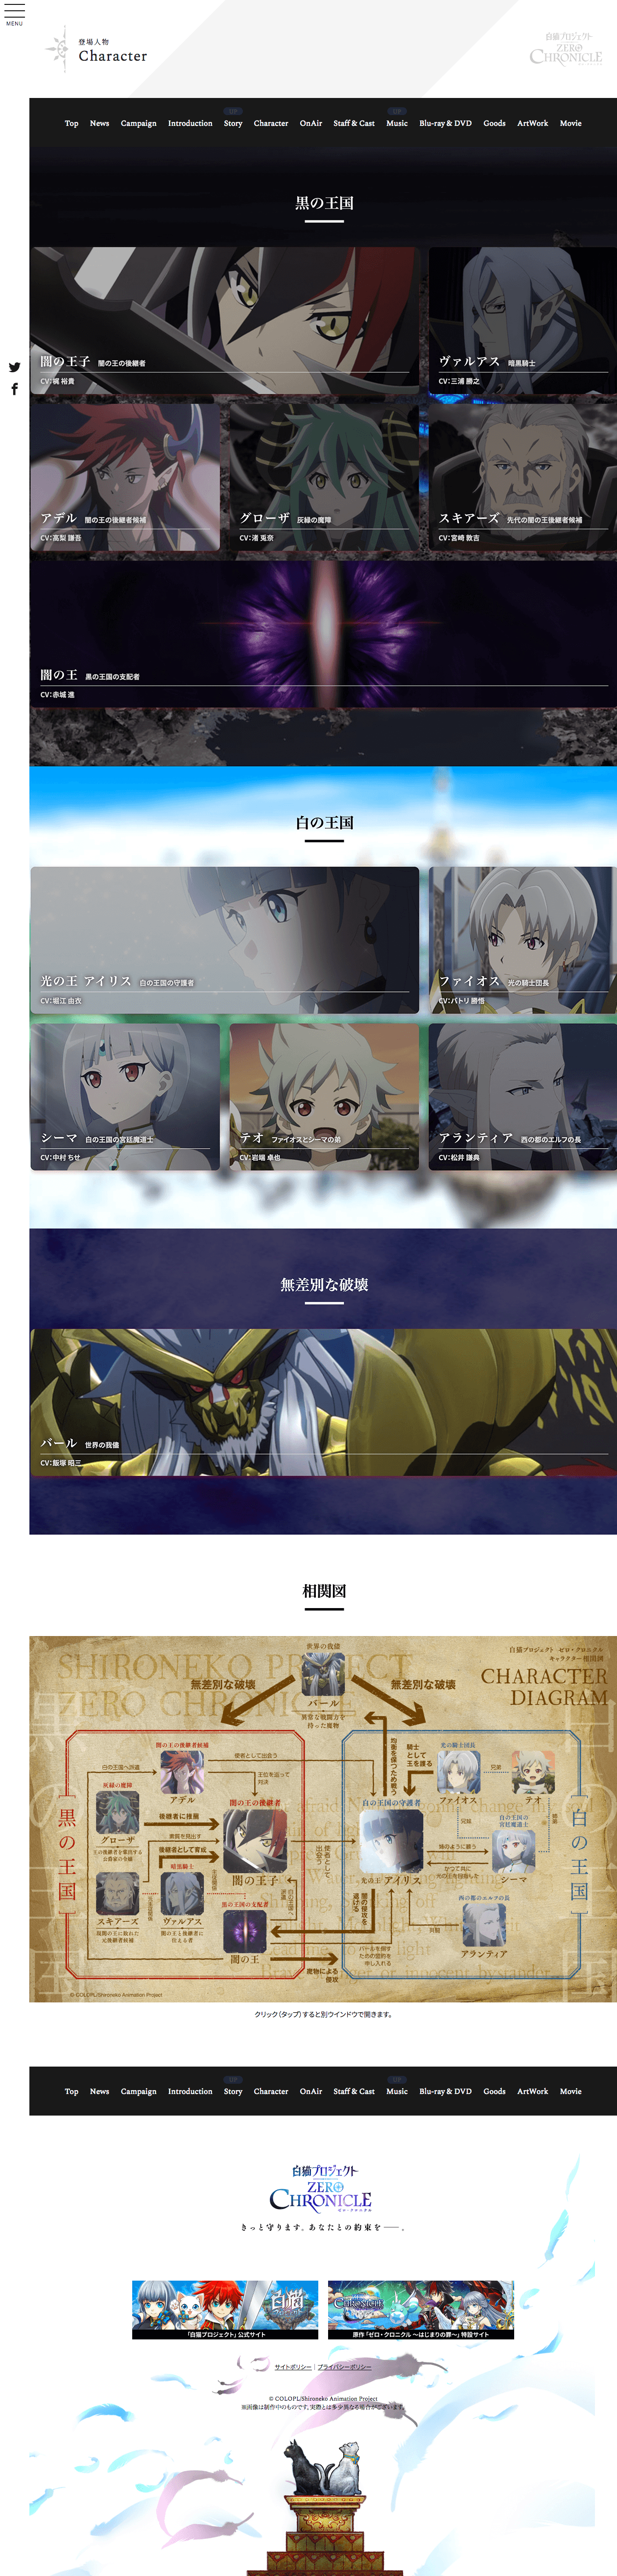 News - お知らせ｜TVアニメ「白猫プロジェクト ZERO CHRONICLE（ゼロ・クロニクル）」公式サイト